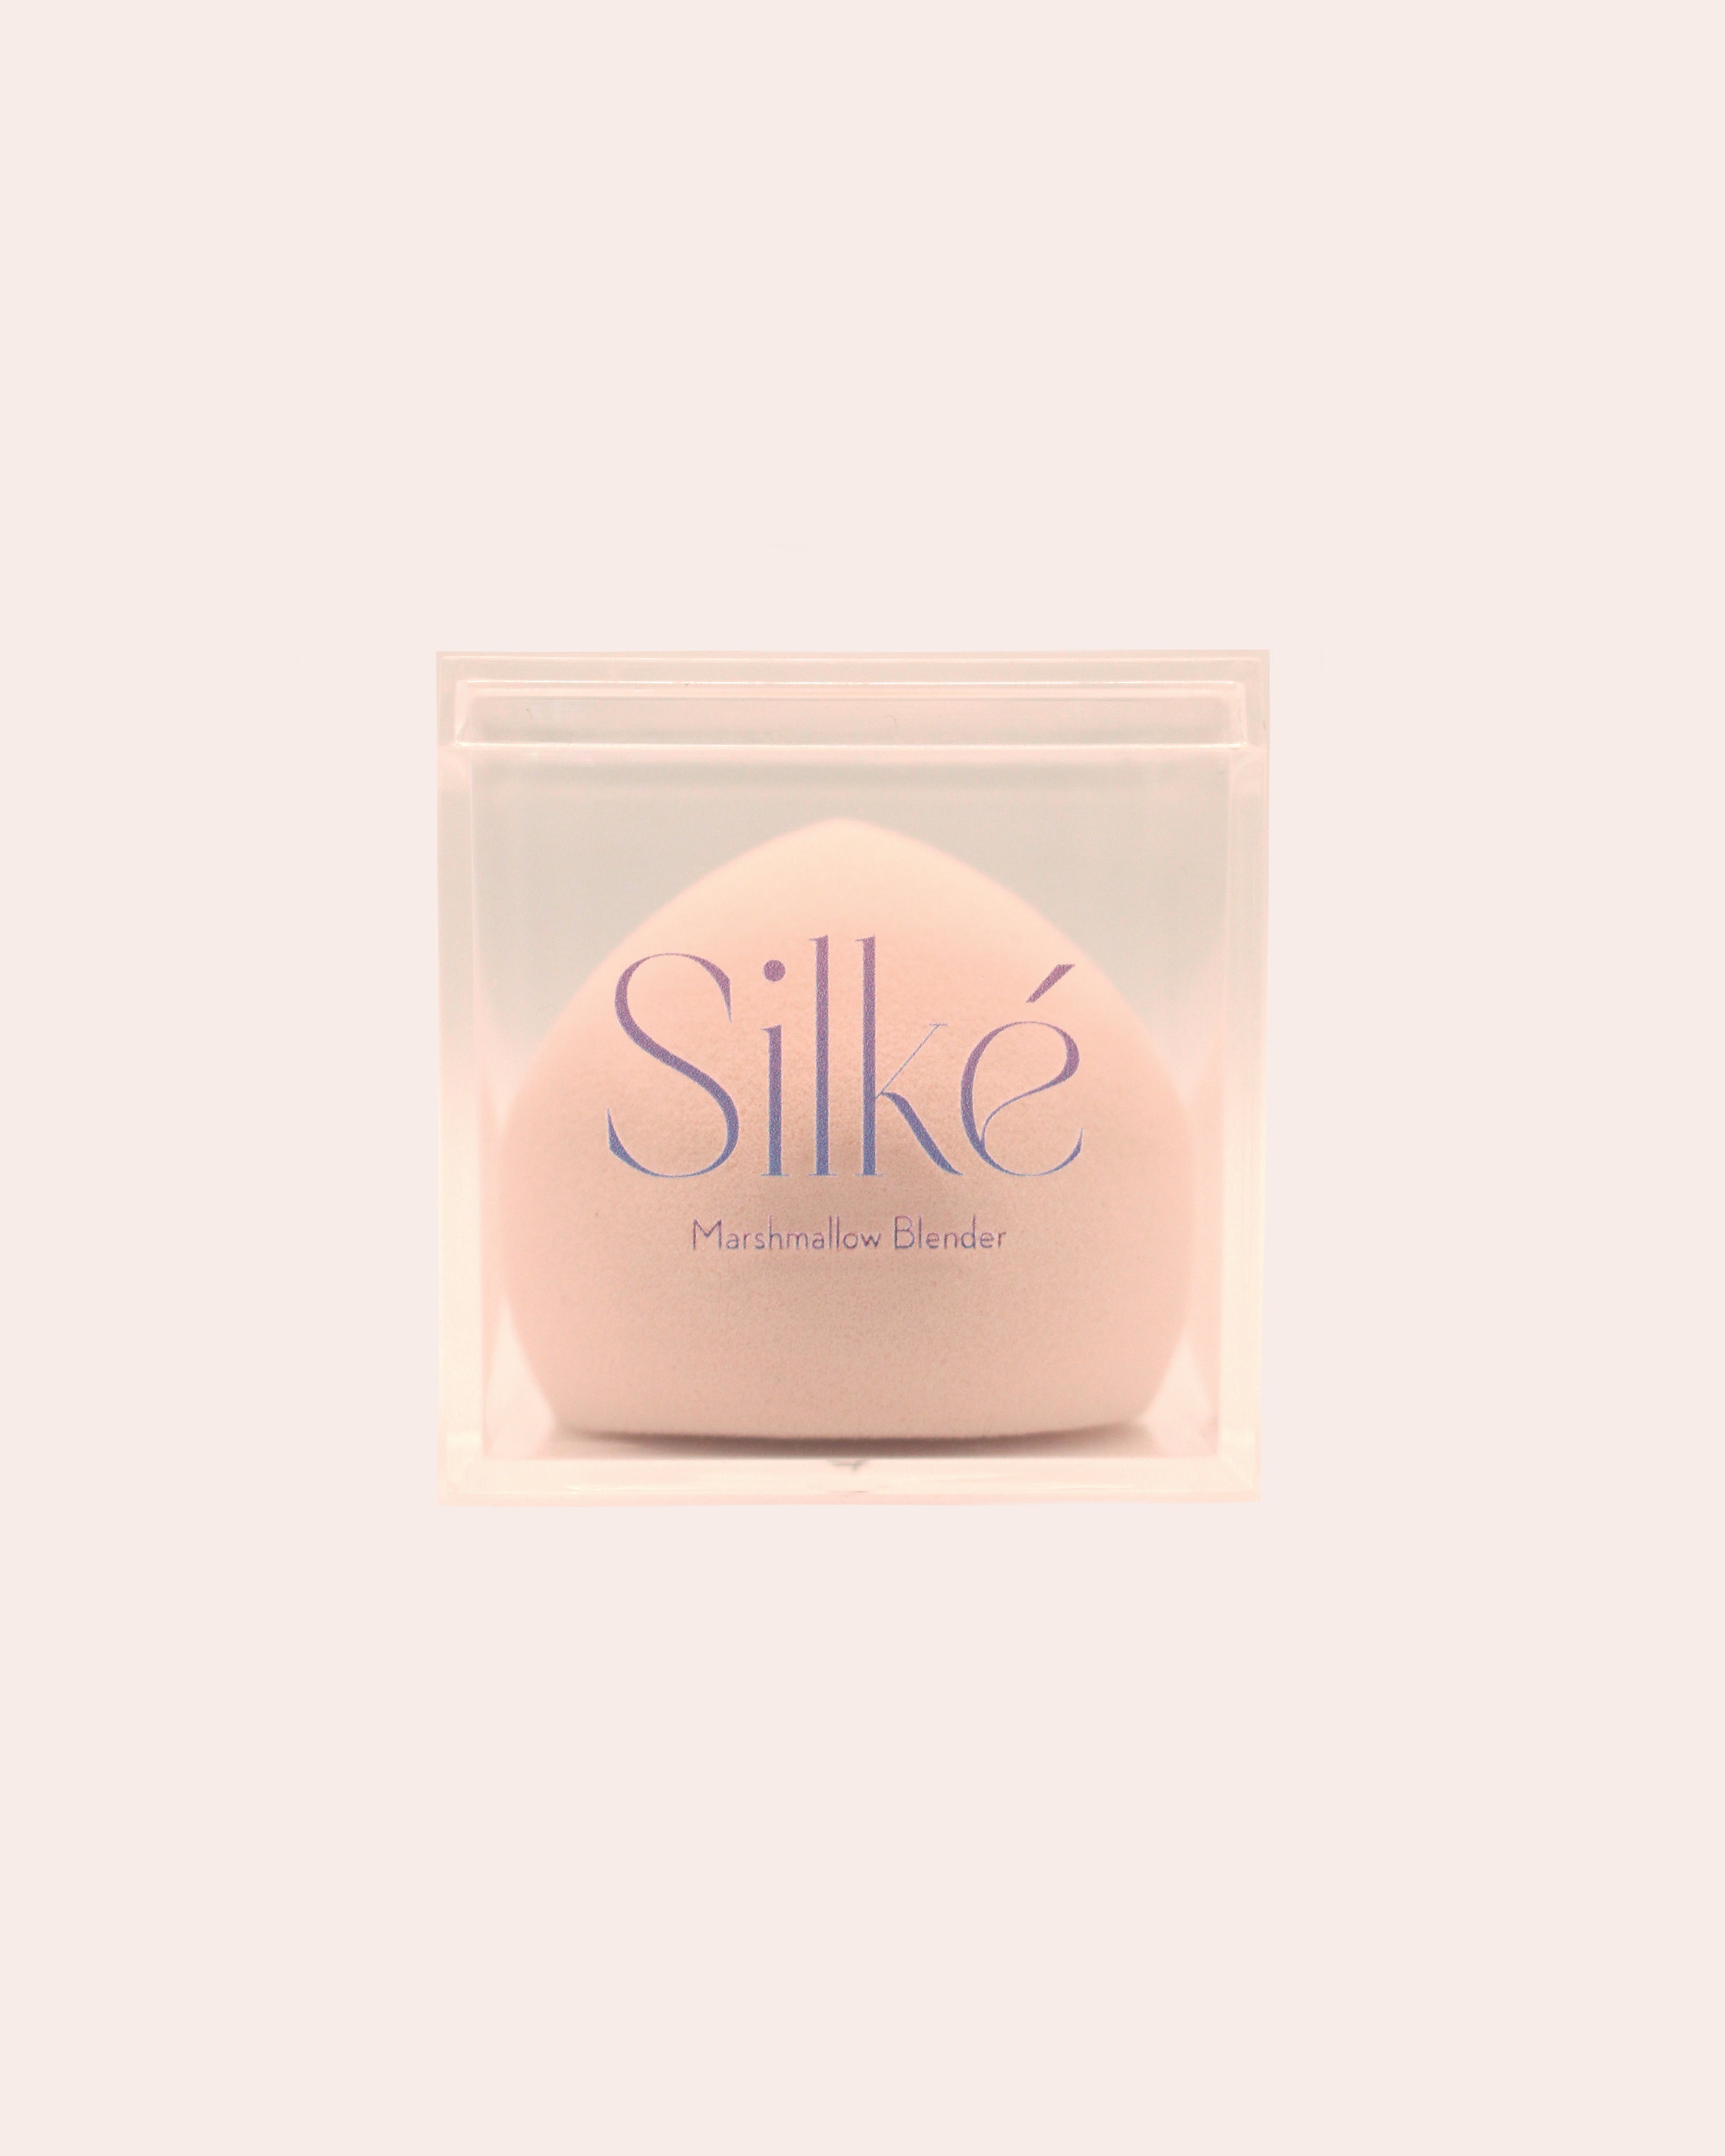 Silke Marshmallow Blender